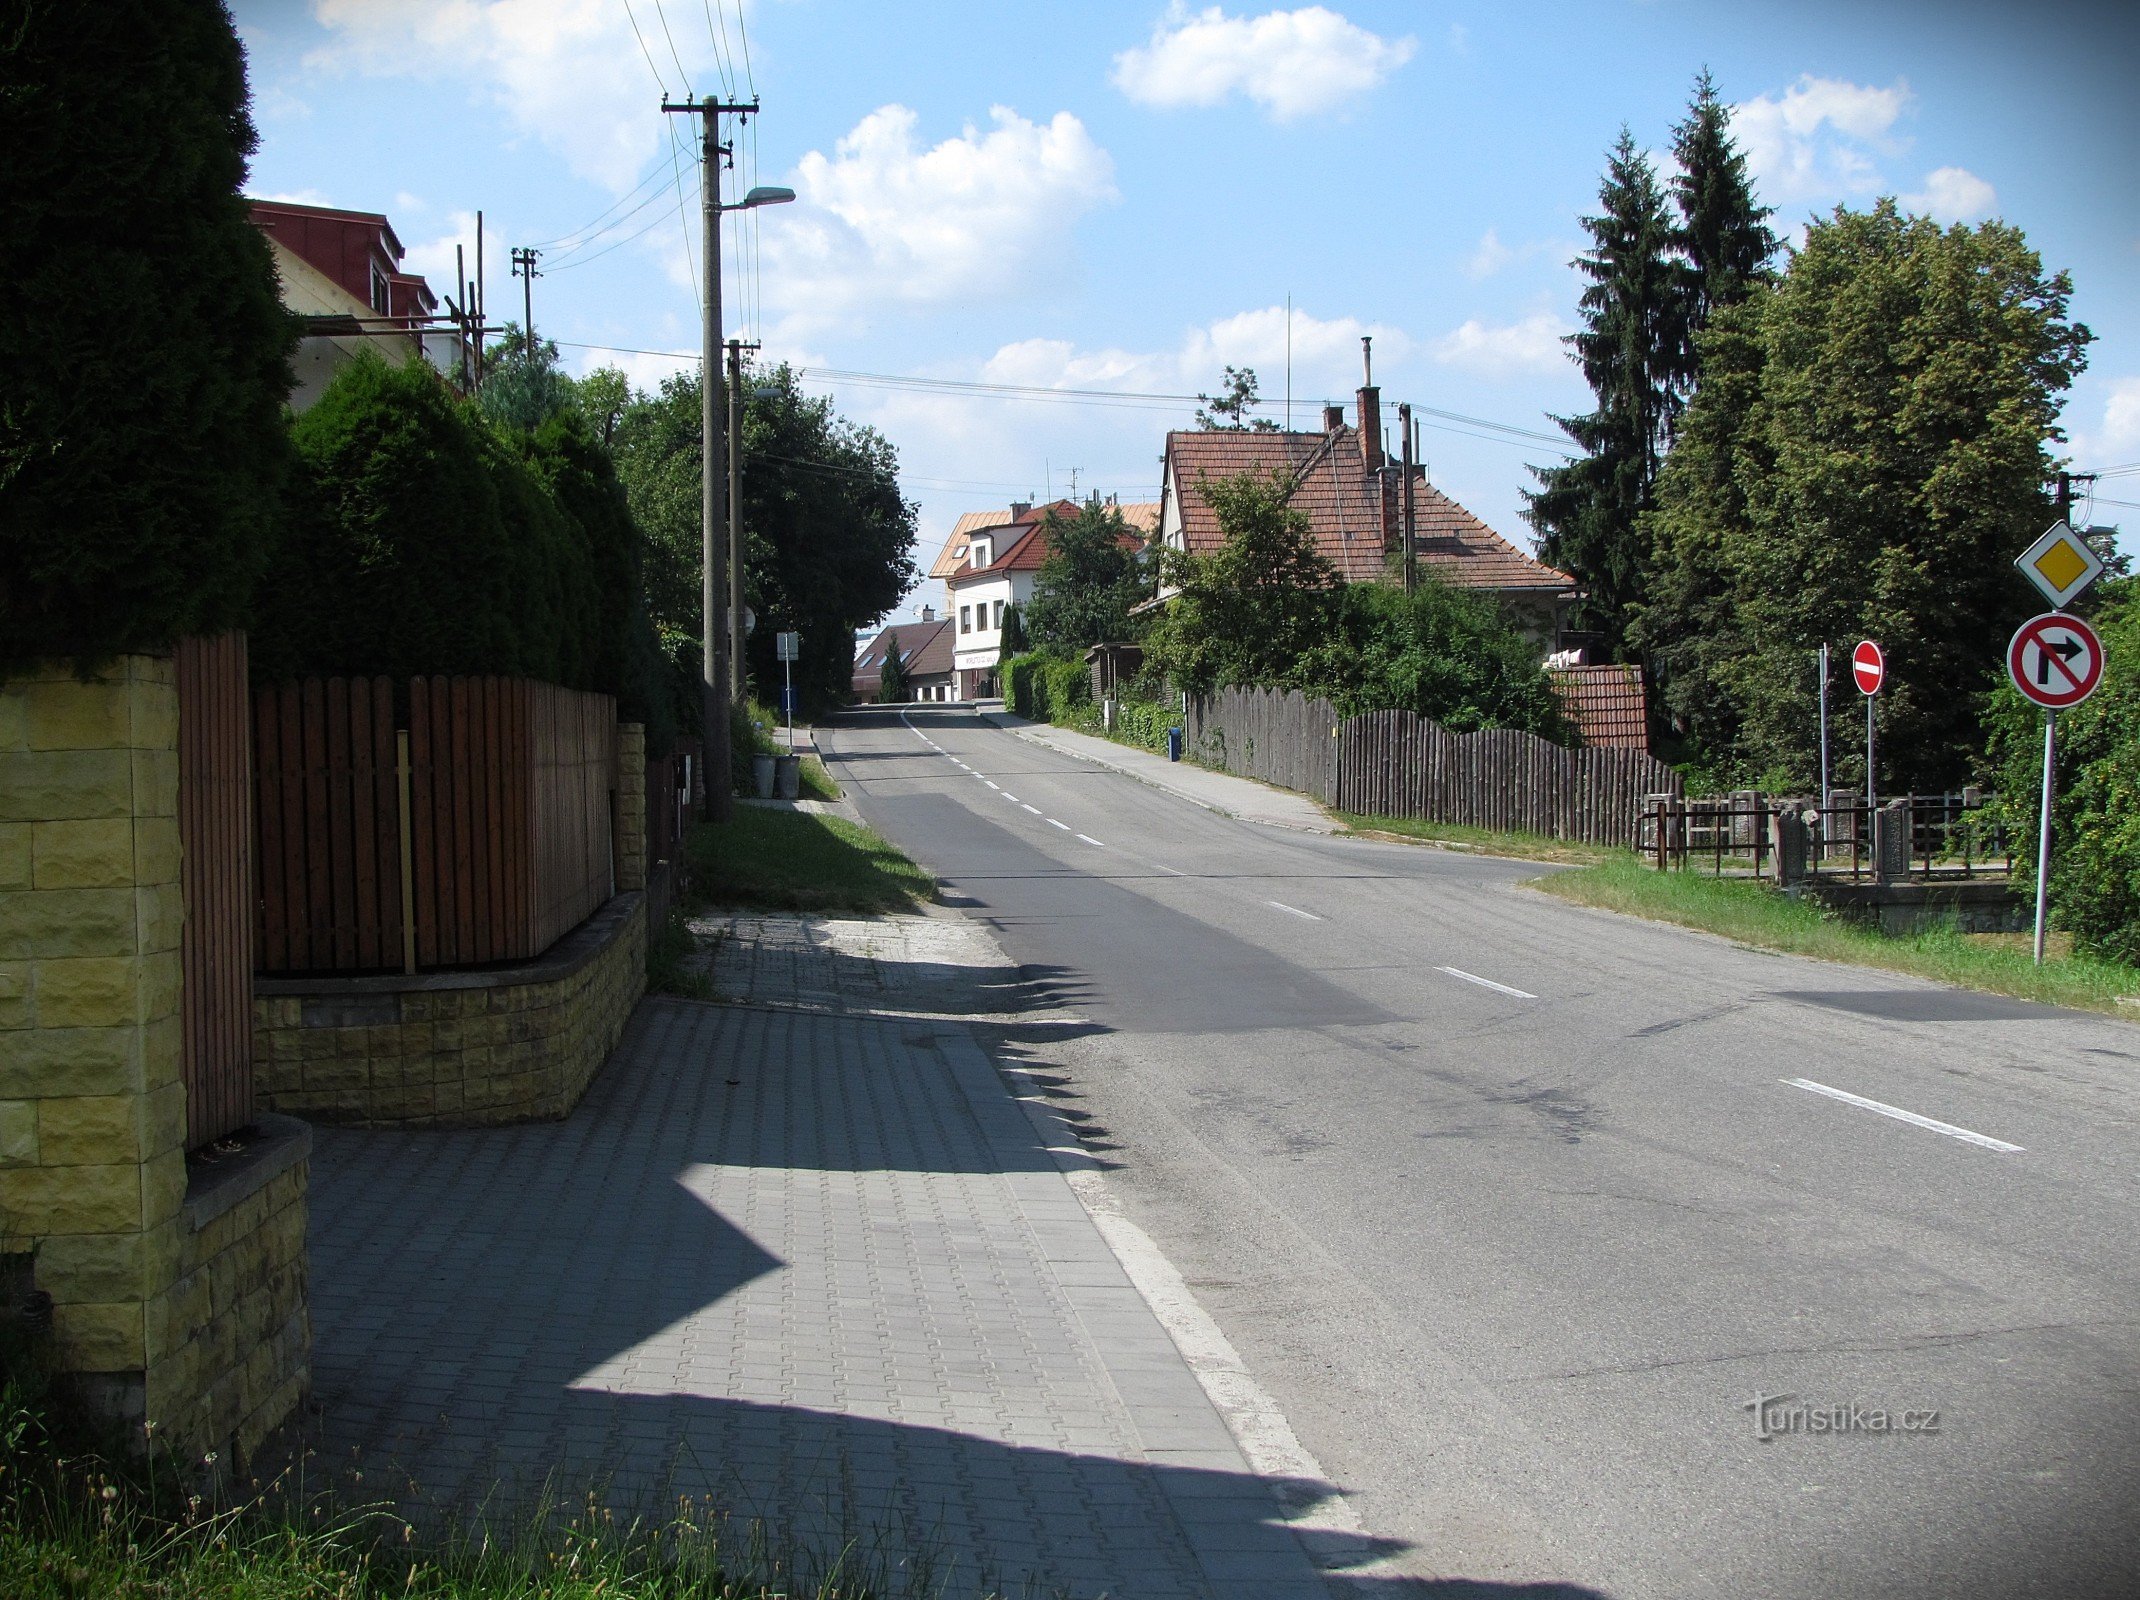 Hradská-Straße